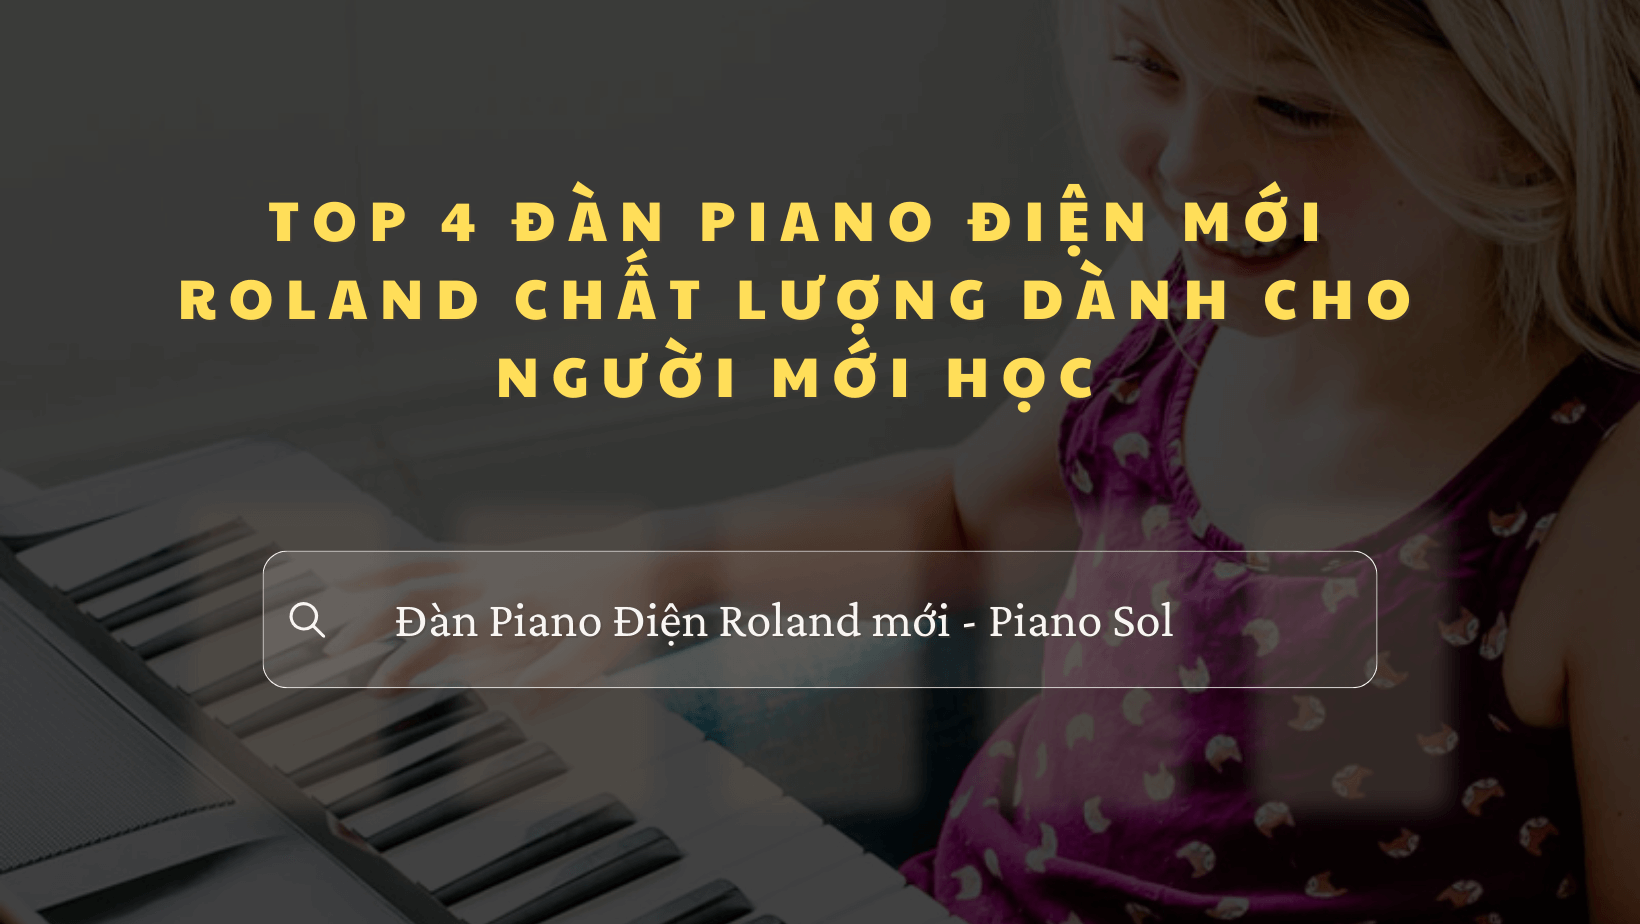 Piano điện Roland mới chất lượng dành cho người mới học